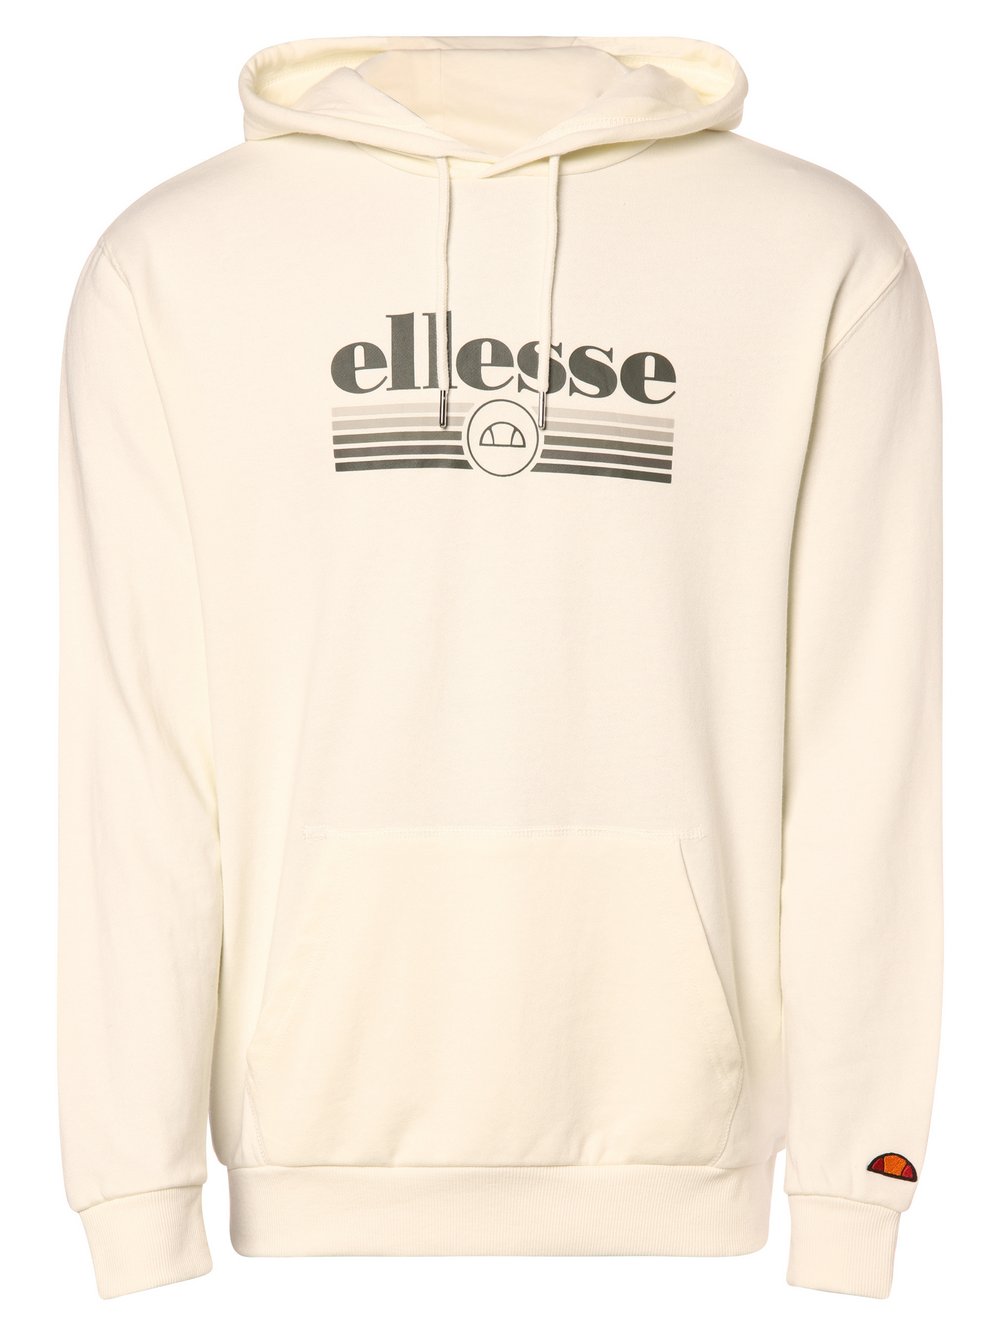 Ellesse - Męska bluza z kapturem – Claro, beżowy|biały